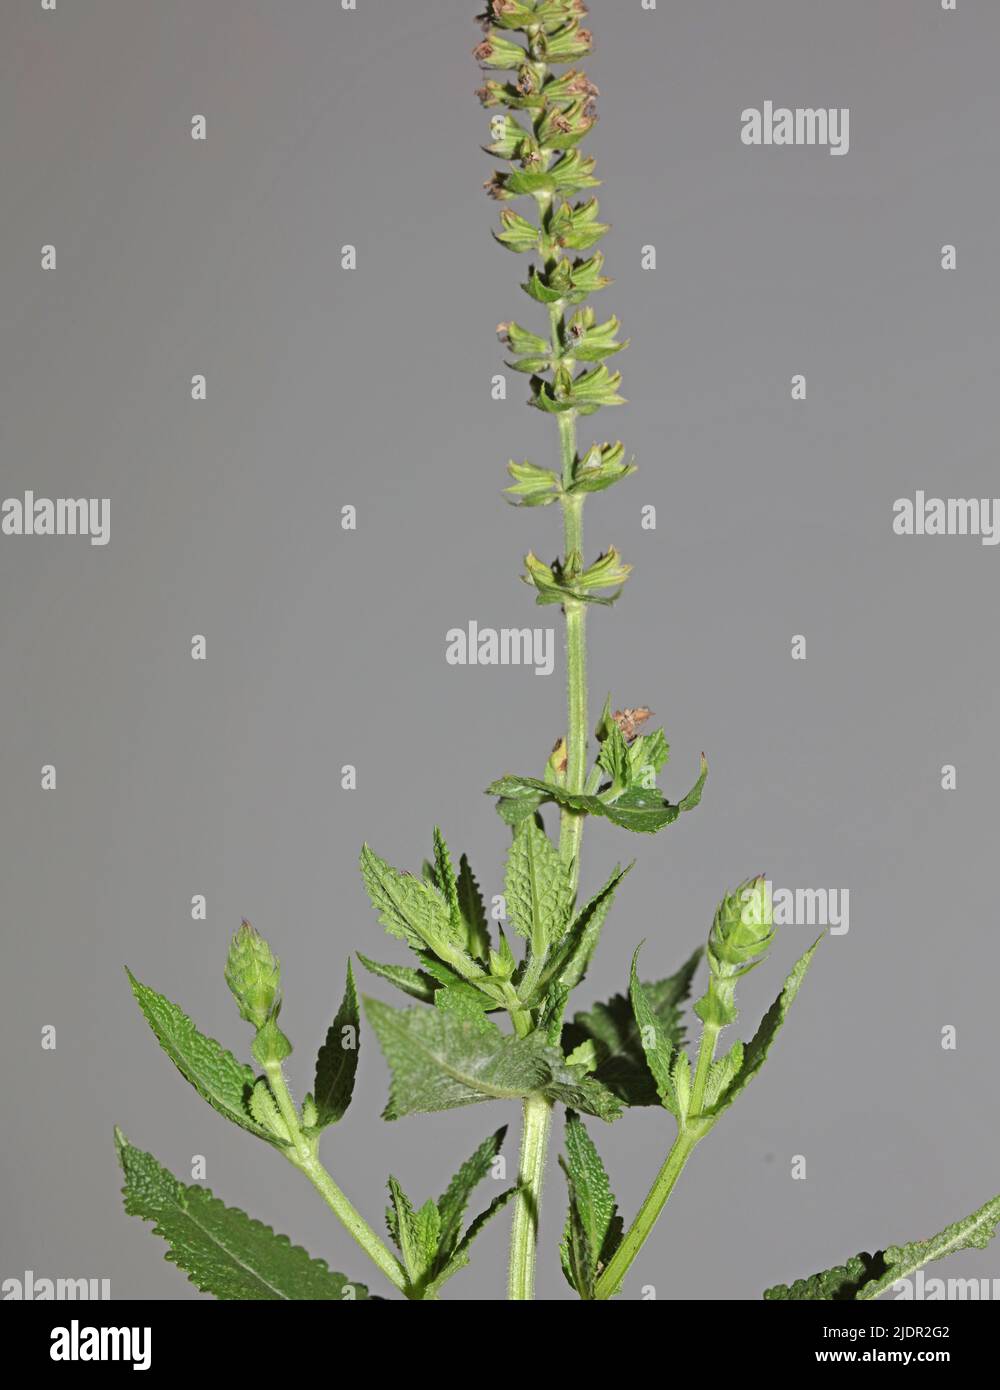 Fleurs aromatiques gros plan botanique de haute qualité grands tirages de la famille des lamiaceae de salvia pratensis Banque D'Images